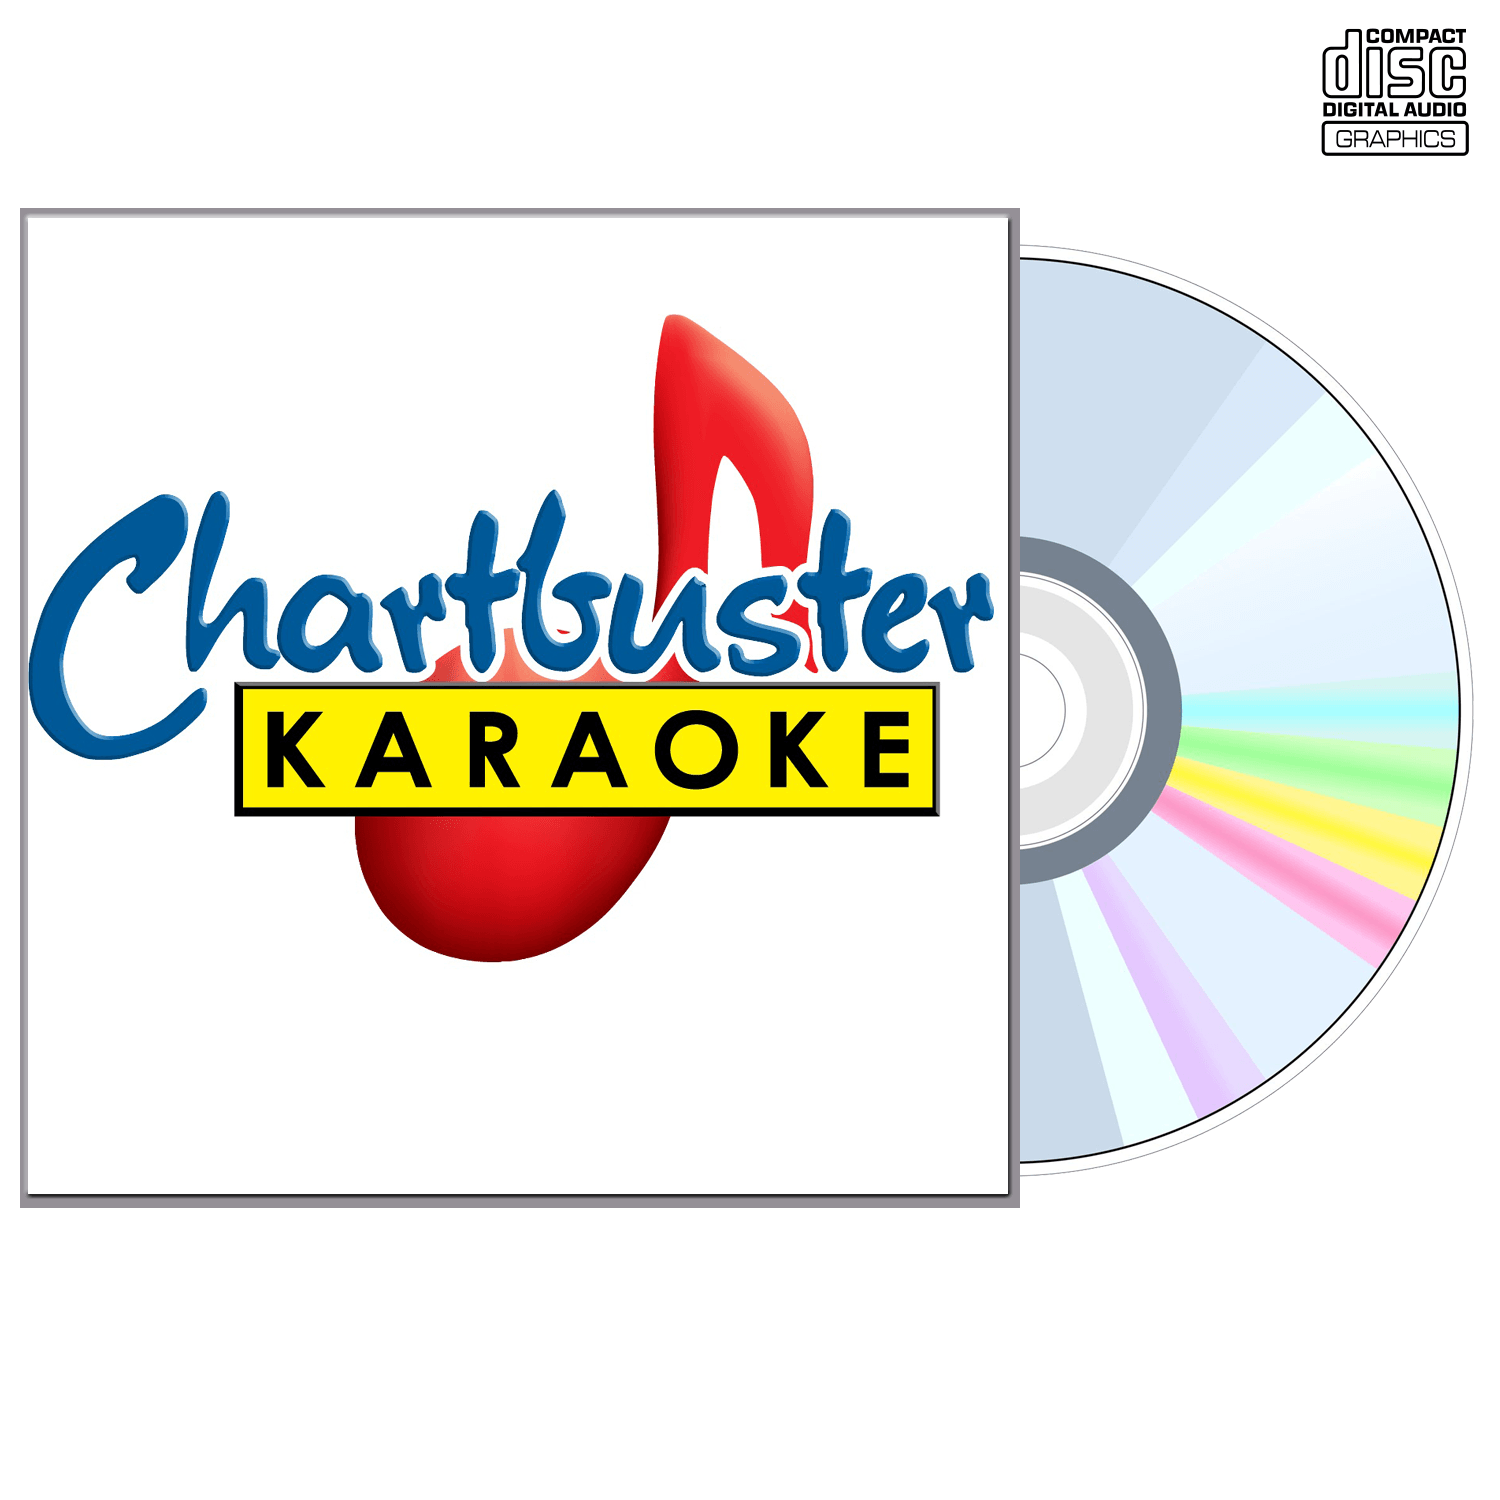 Dottie West - CD+G - Chartbuster Karaoke - Karaoke Home Entertainment